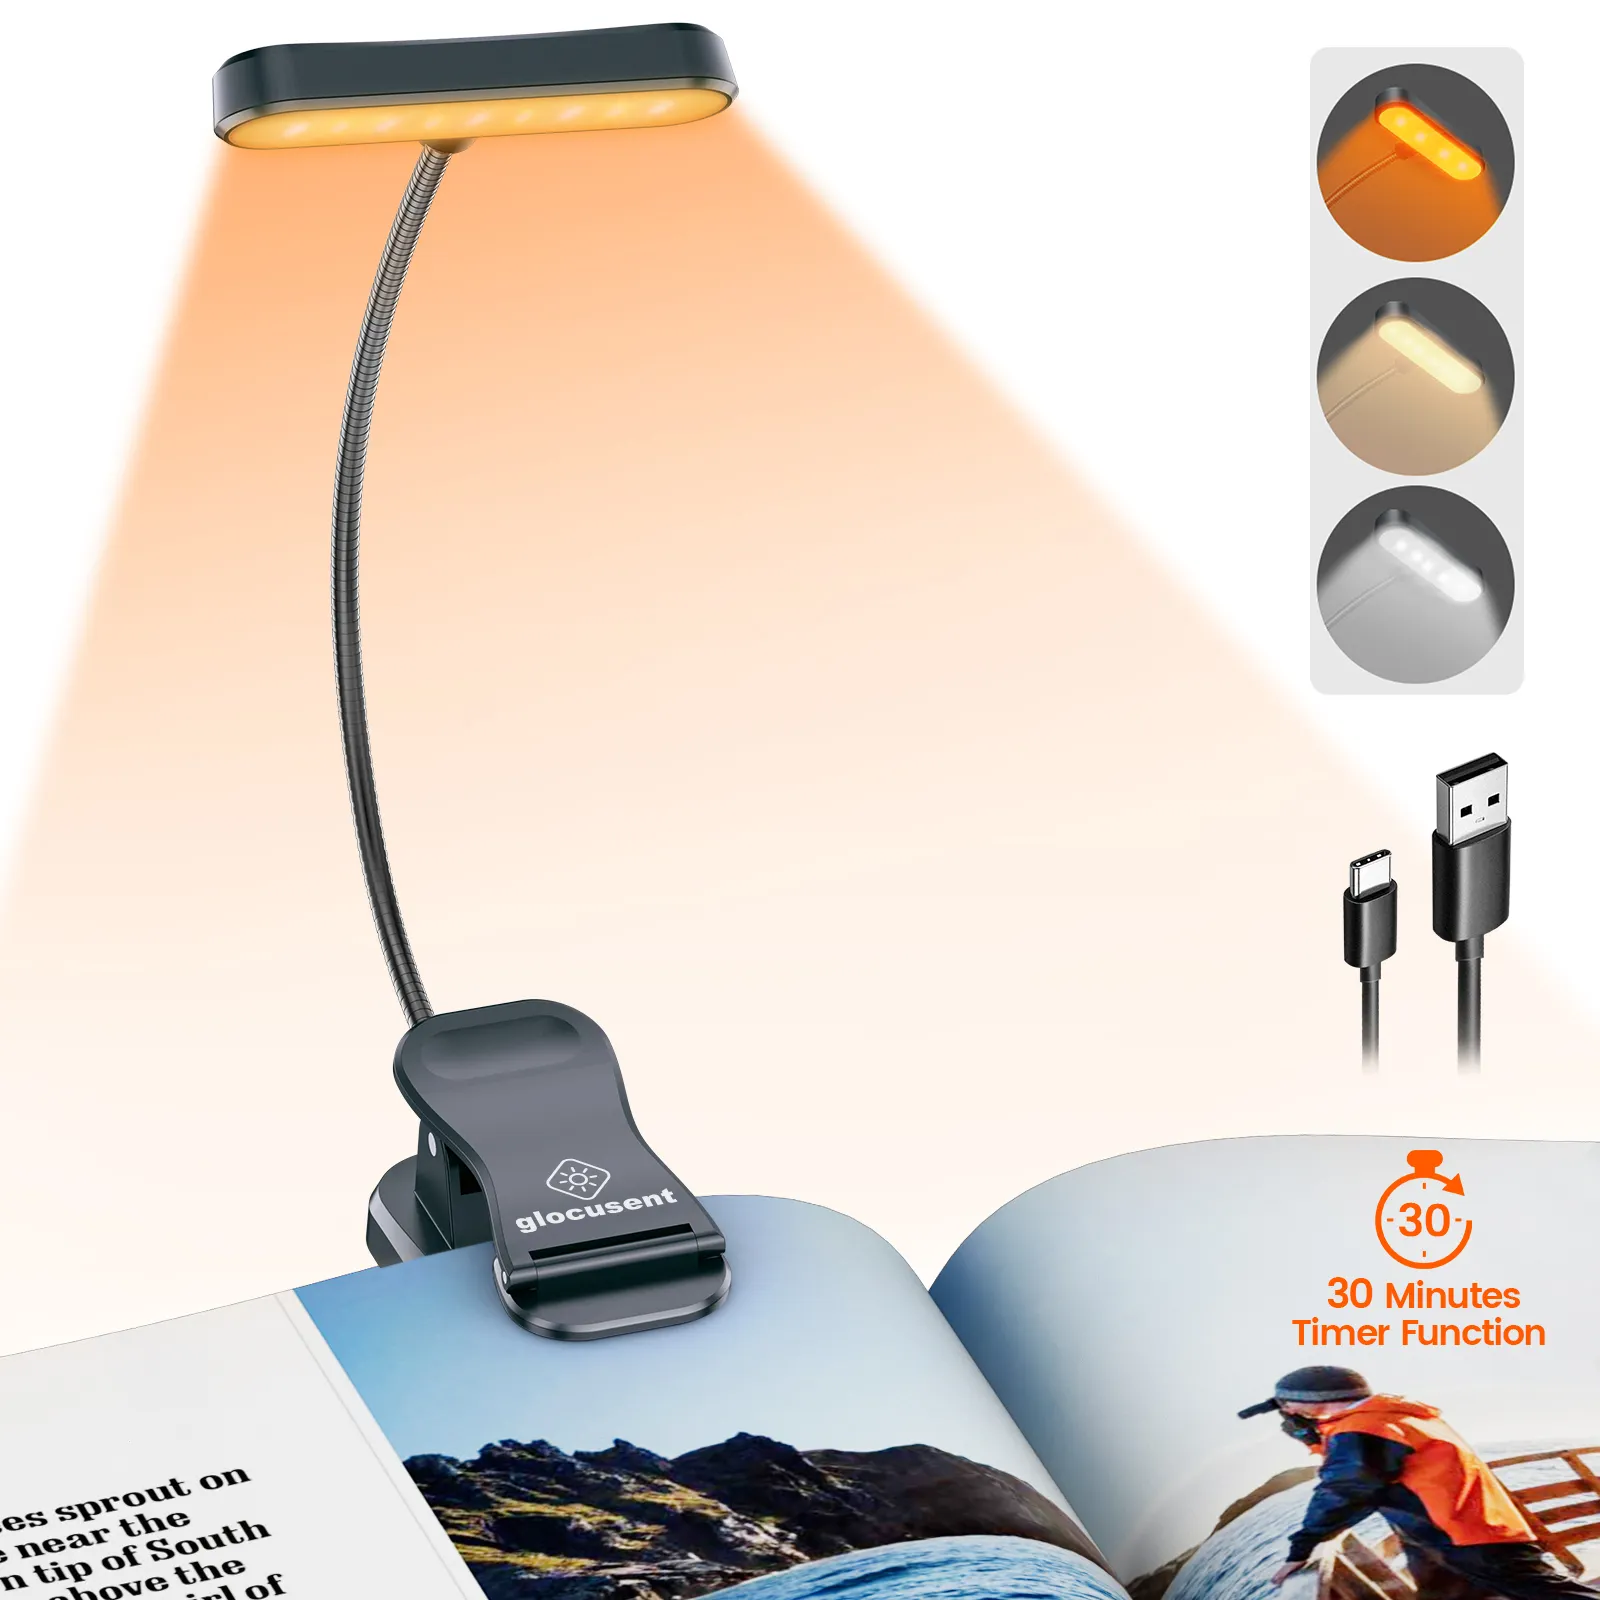 Glocusent ligero Flexible regulable protección ocular libro lectura luz Clip en Usb Lámpara de lectura recargable con Clip